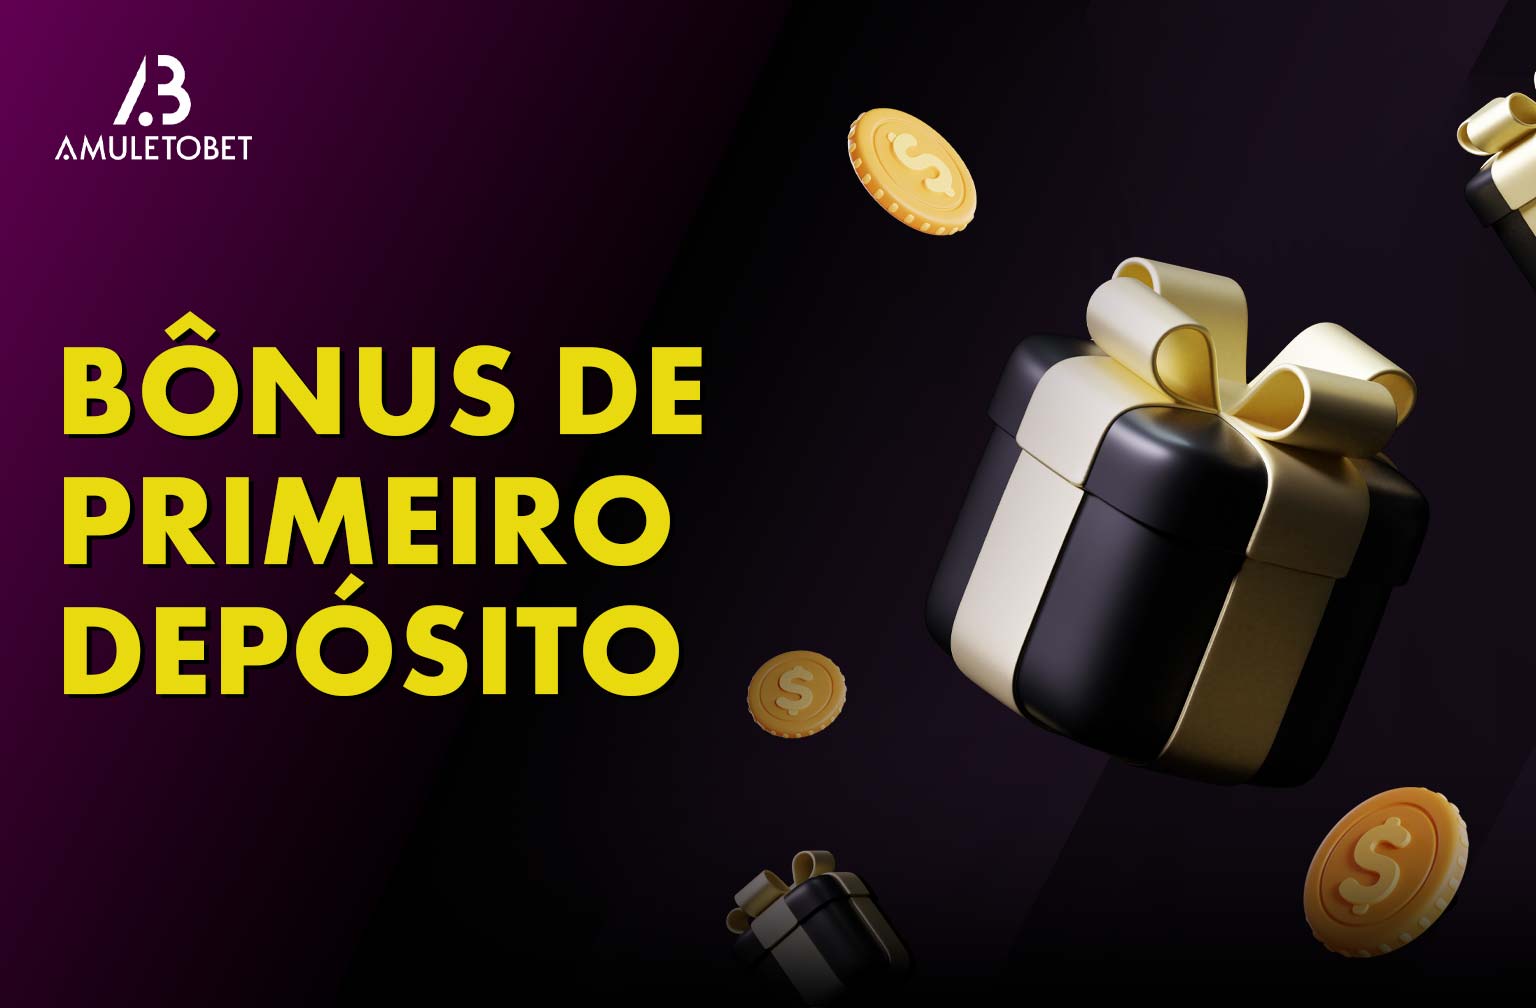 AmuletoBet oferece um bônus no primeiro depósito para jogadores do Brasil.